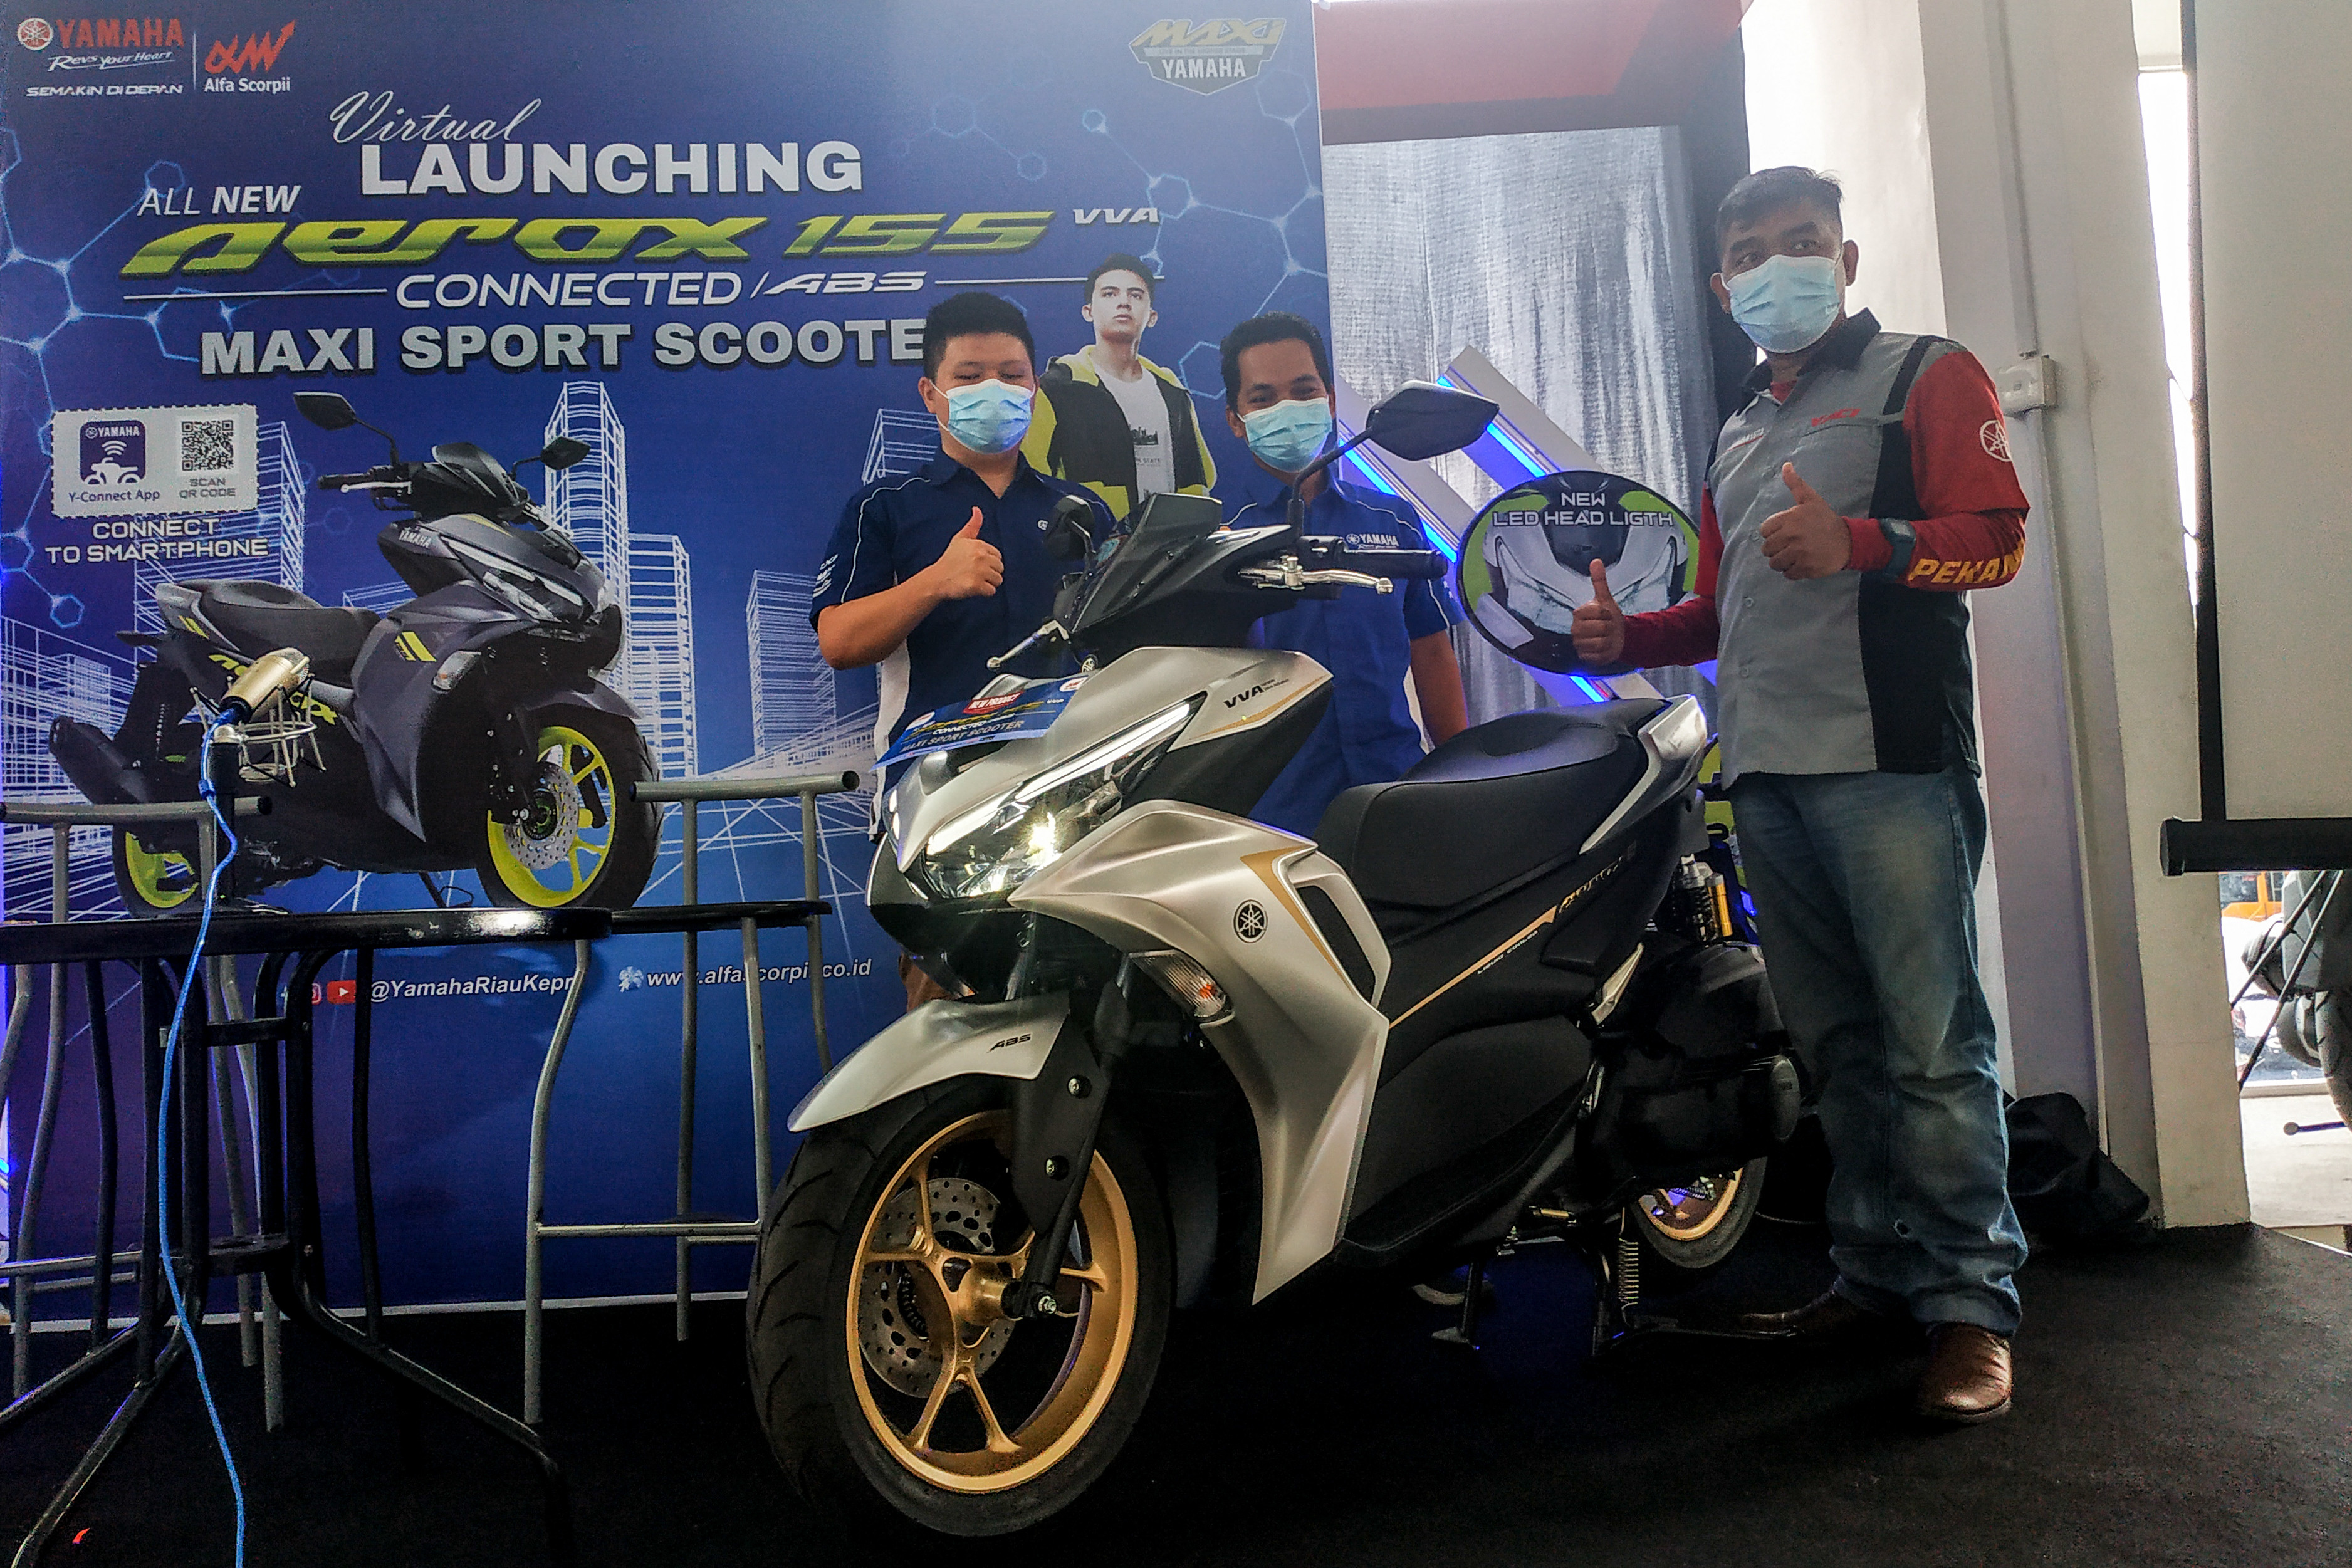 Yamaha All New Aerox 155 Connected Resmi Diluncurkan di Riau, Generasi Baru yang Dibekali Fitur Y-Connect